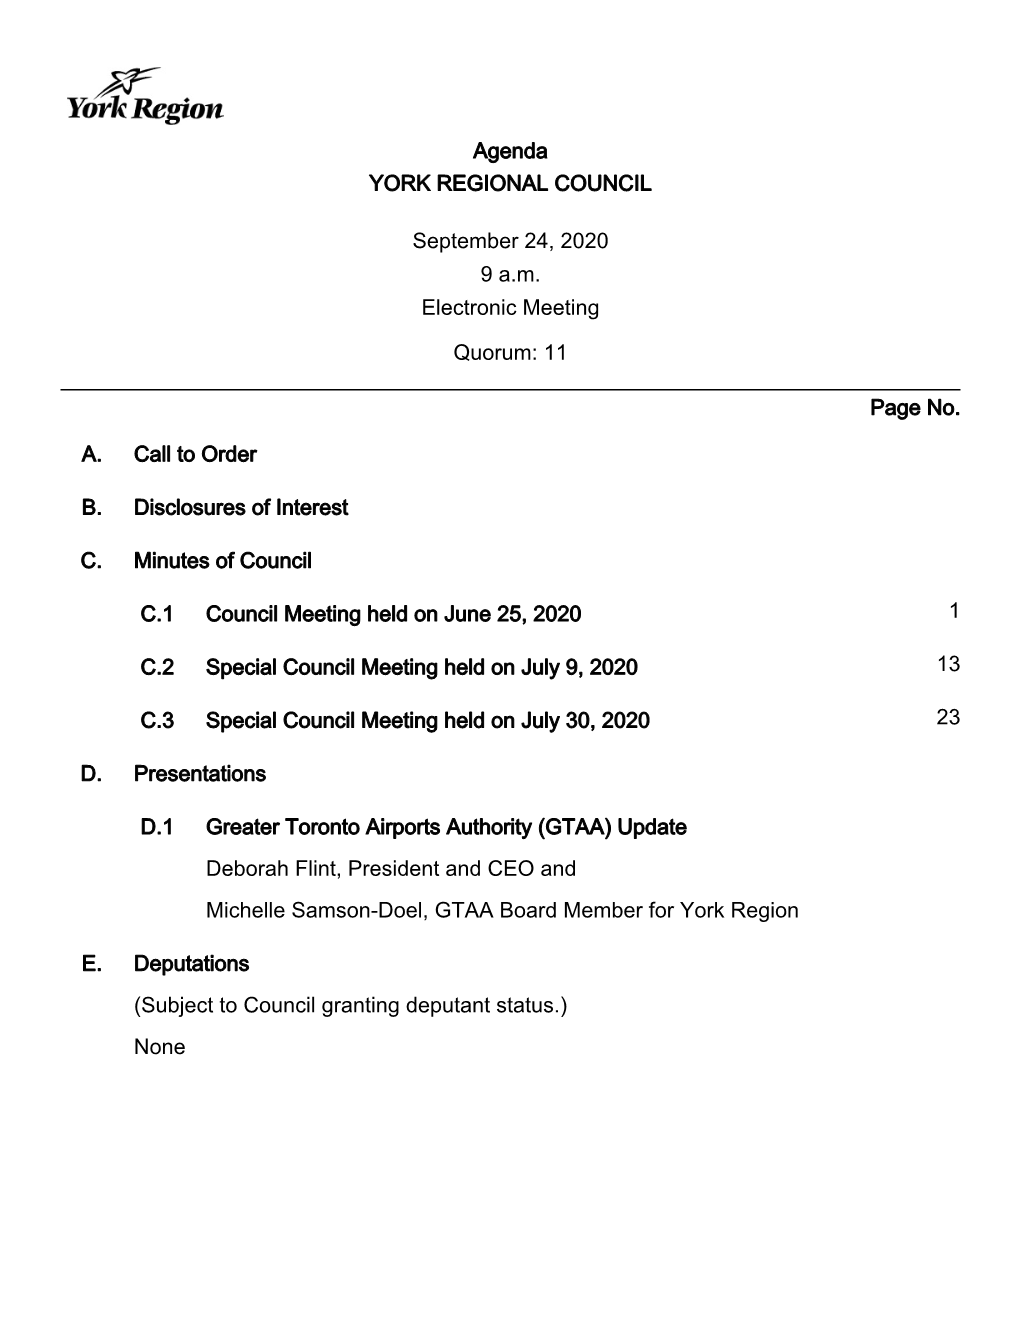 Agenda YORK REGIONAL COUNCIL September 24, 2020 9 A.M